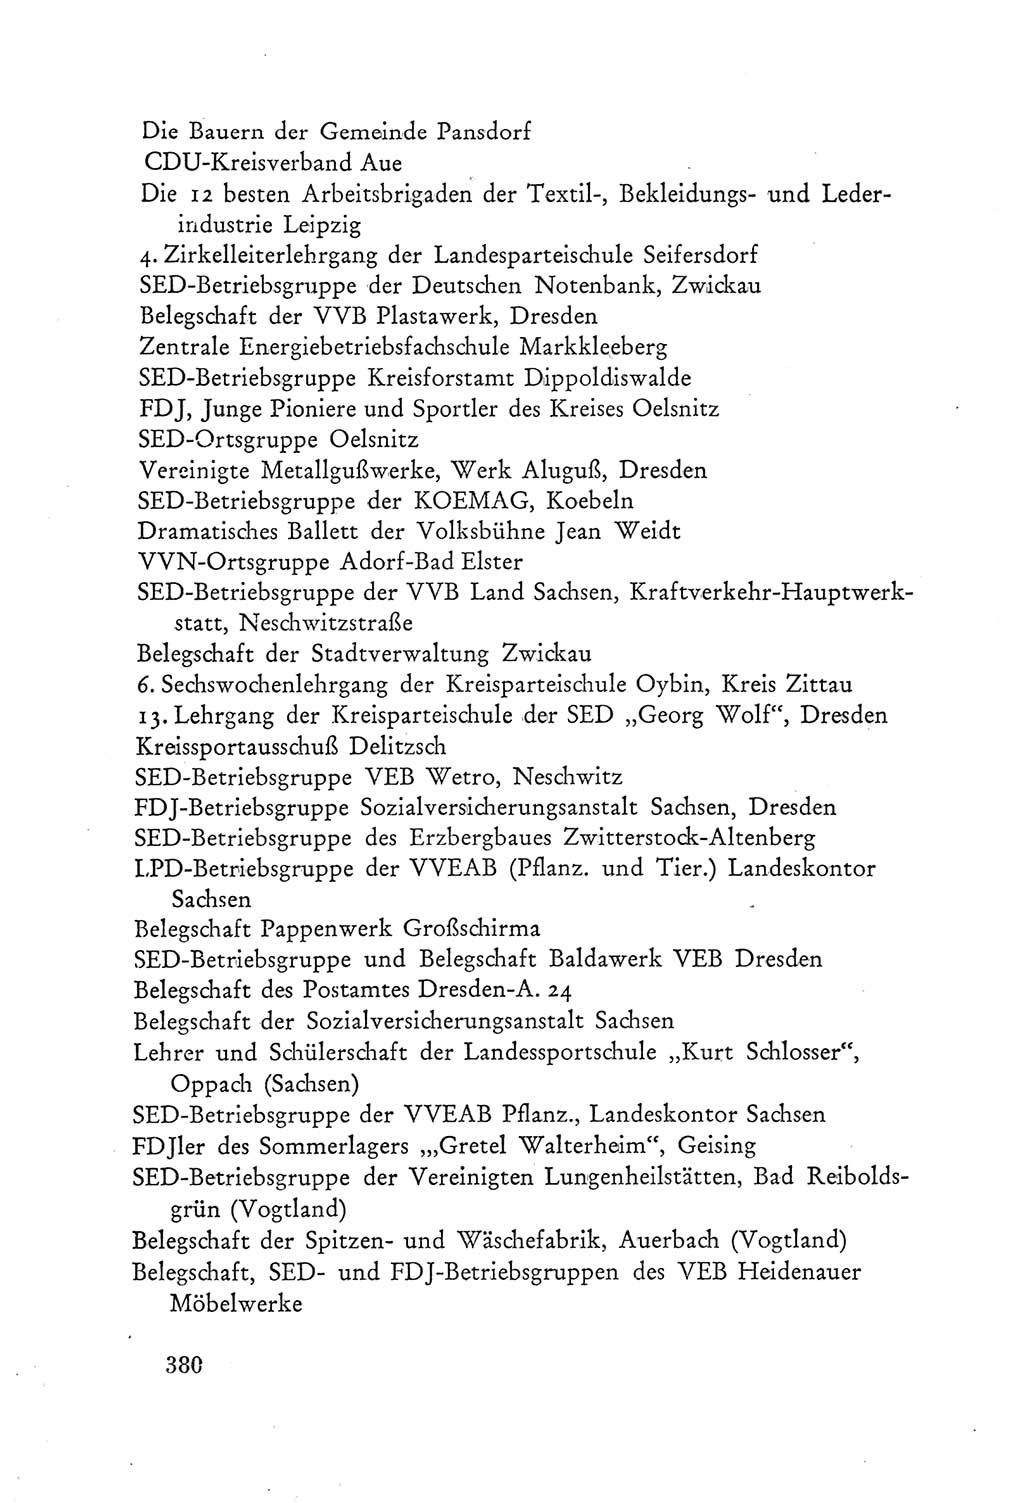 Protokoll der Verhandlungen des Ⅲ. Parteitages der Sozialistischen Einheitspartei Deutschlands (SED) [Deutsche Demokratische Republik (DDR)] 1950, Band 2, Seite 380 (Prot. Verh. Ⅲ. PT SED DDR 1950, Bd. 2, S. 380)